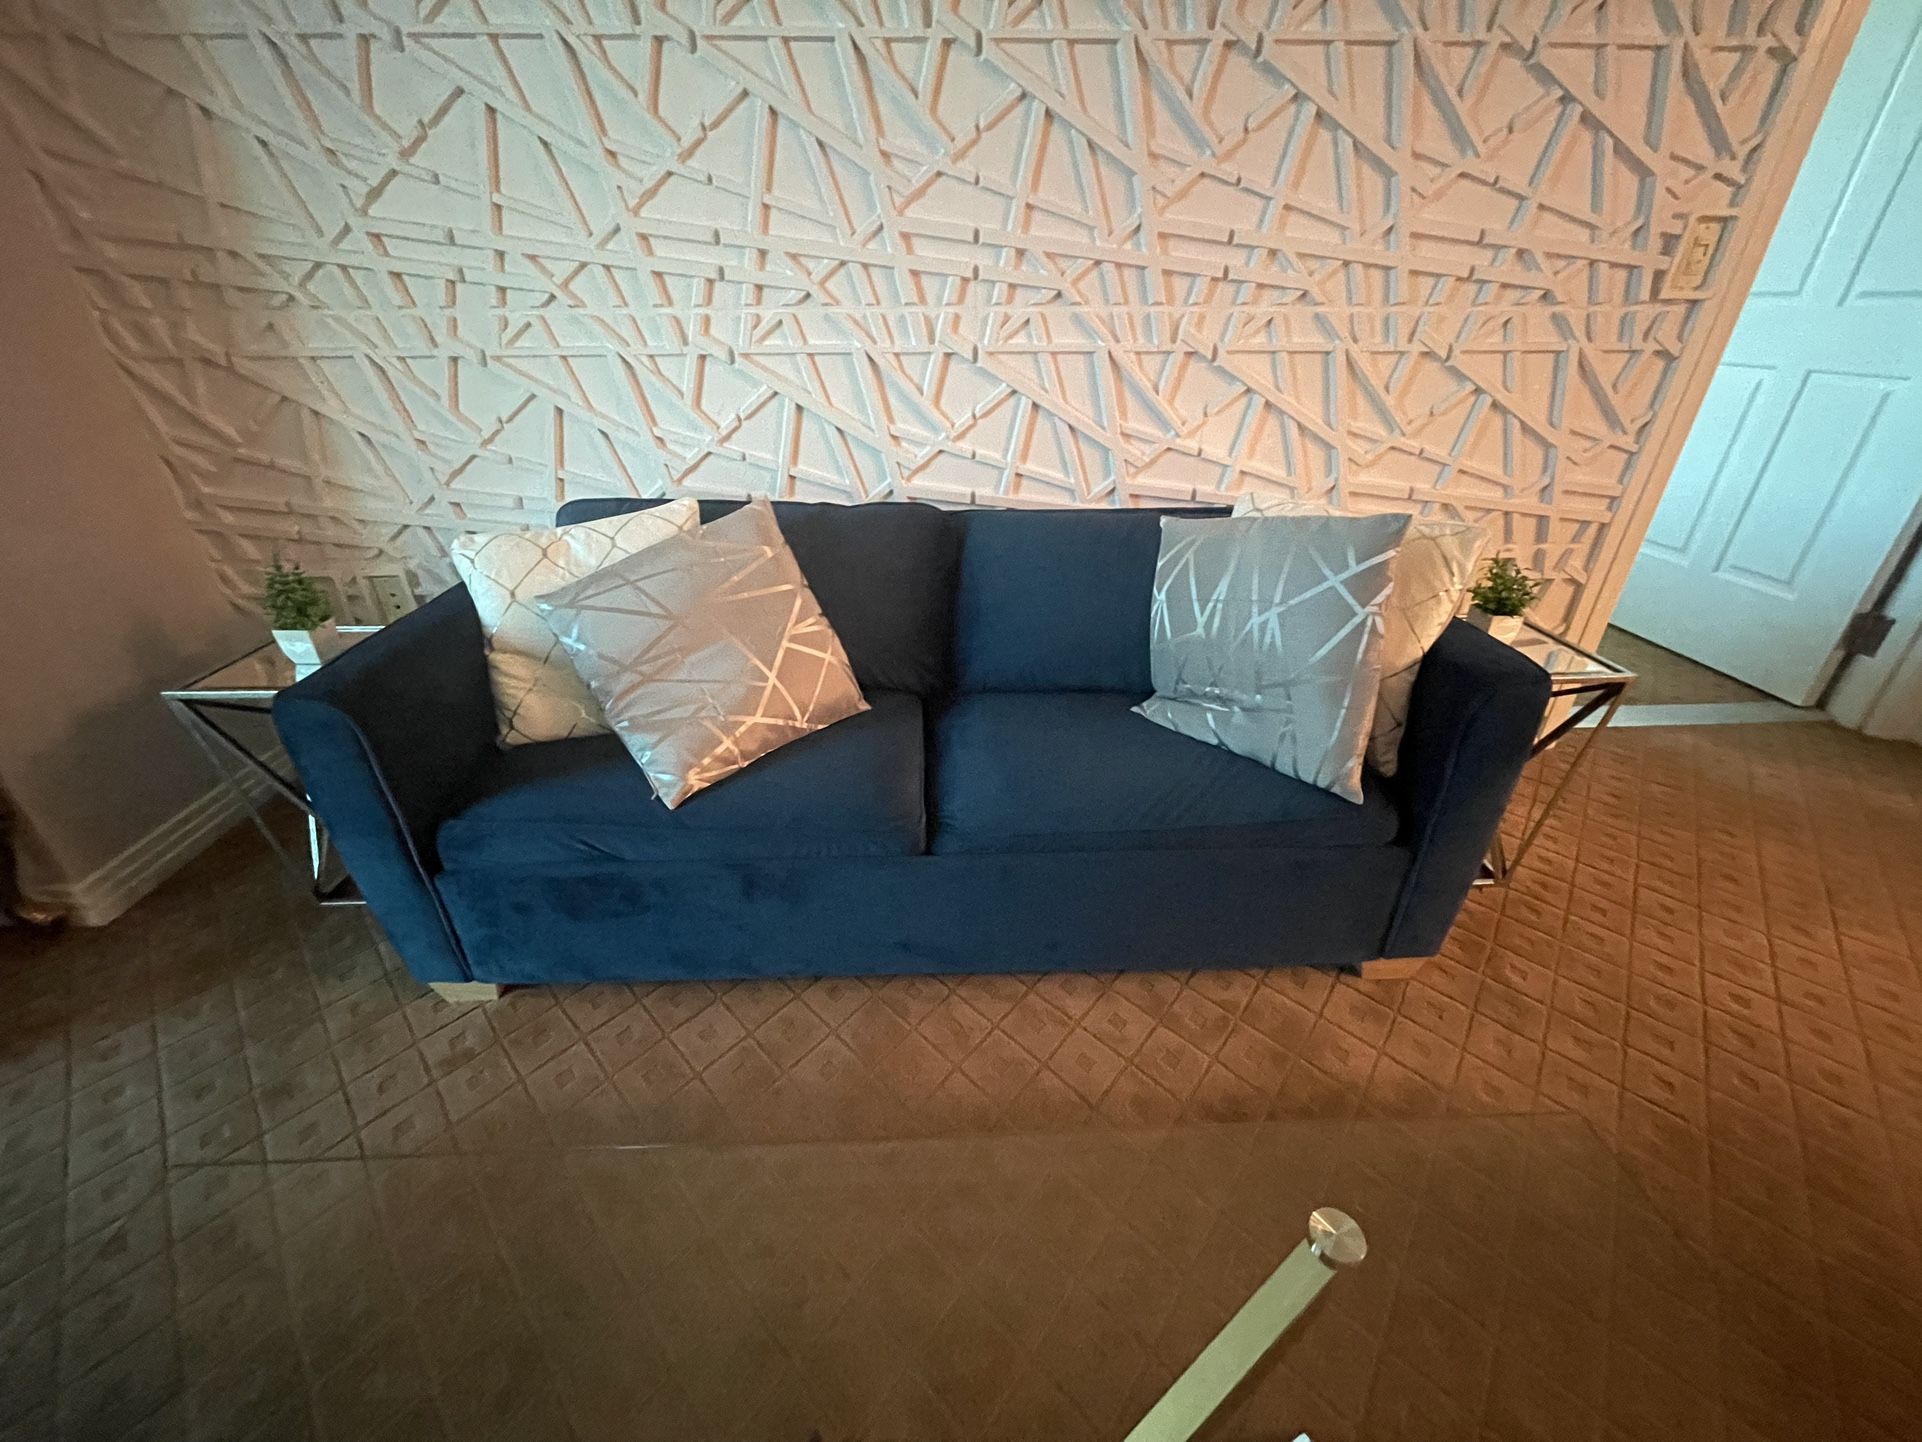 Navy Blue Sleeper Sofa